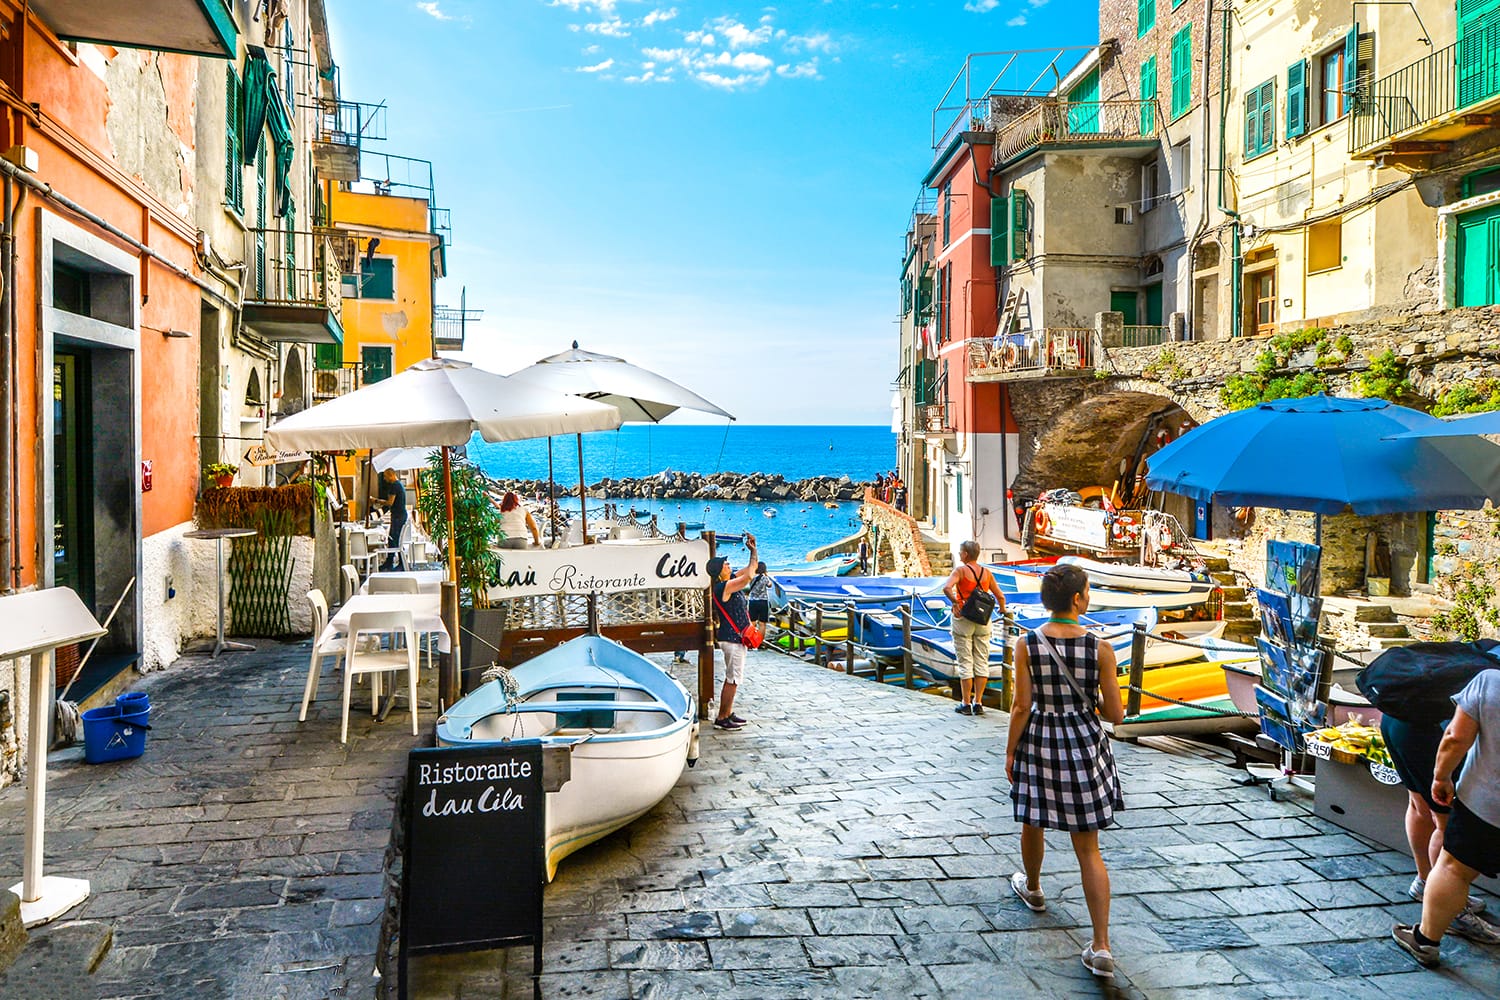 Street in Riomaggiore, Cinque Terre, Italy